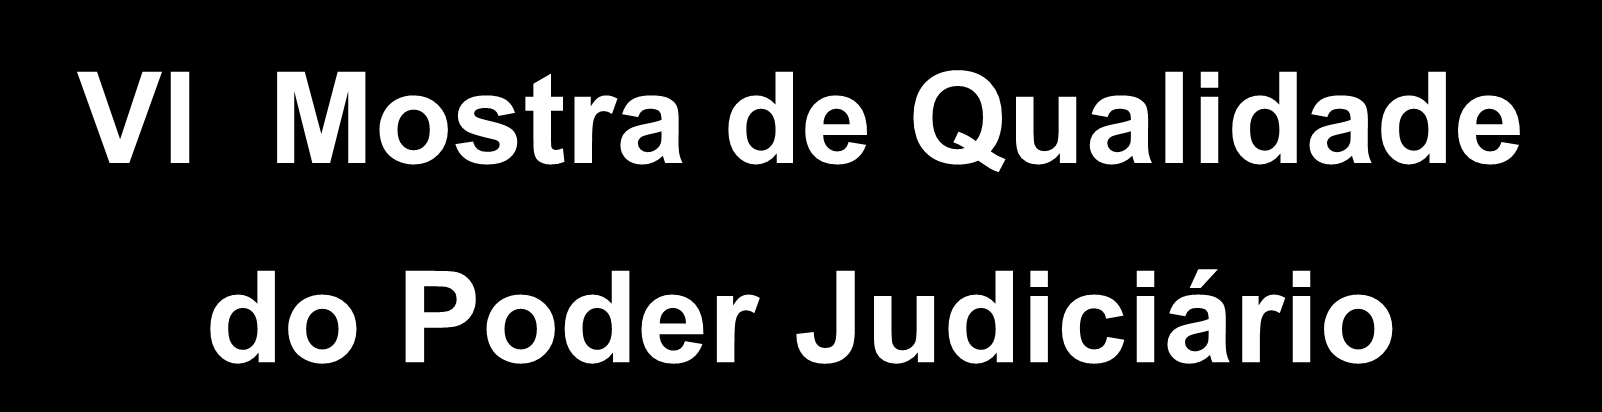 PODER JUDICIÁRIO JUSTIÇA FEDERAL SEÇÃO JUDICIÁRIA DO RIO DE JANEIRO VI Mostra de